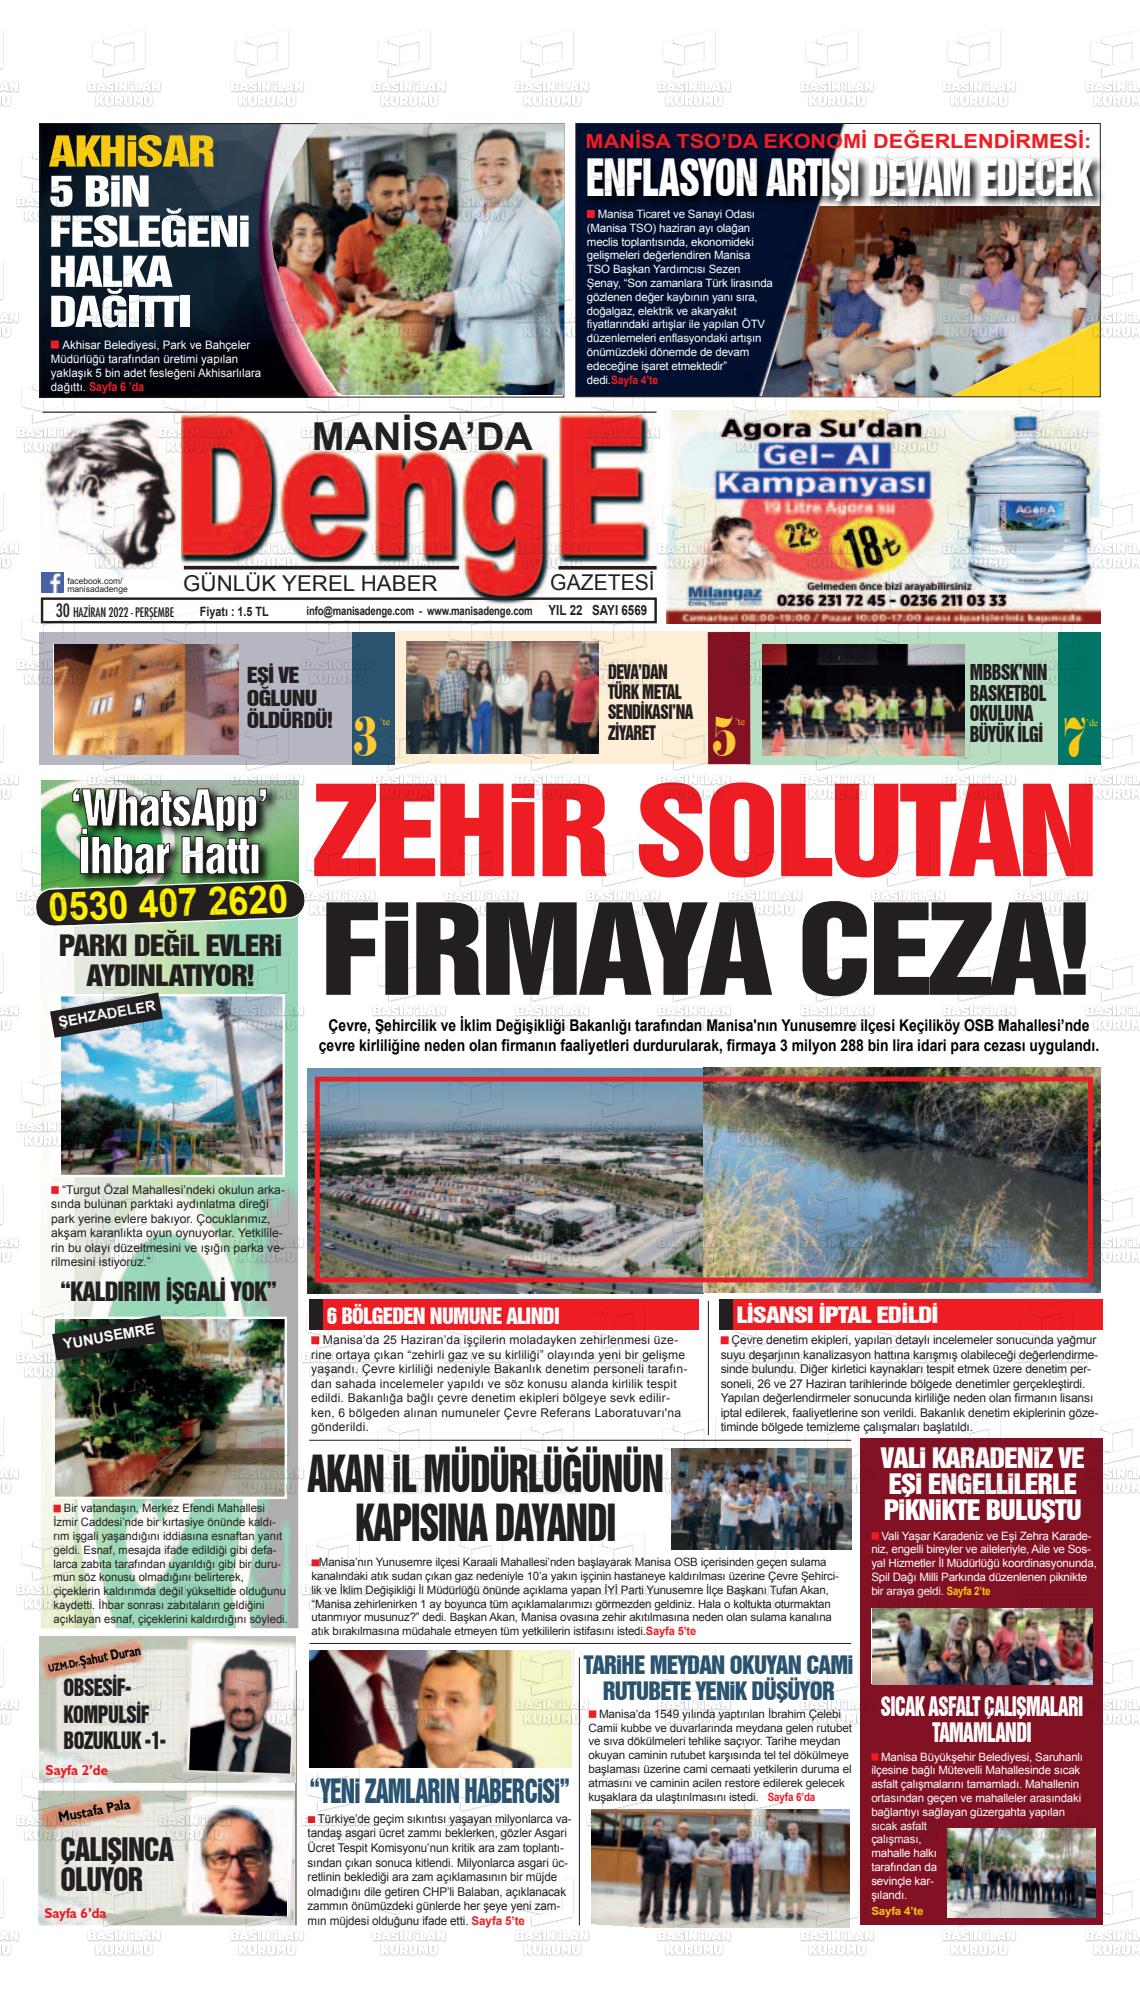 02 Temmuz 2022 Manisada Denge Gazete Manşeti